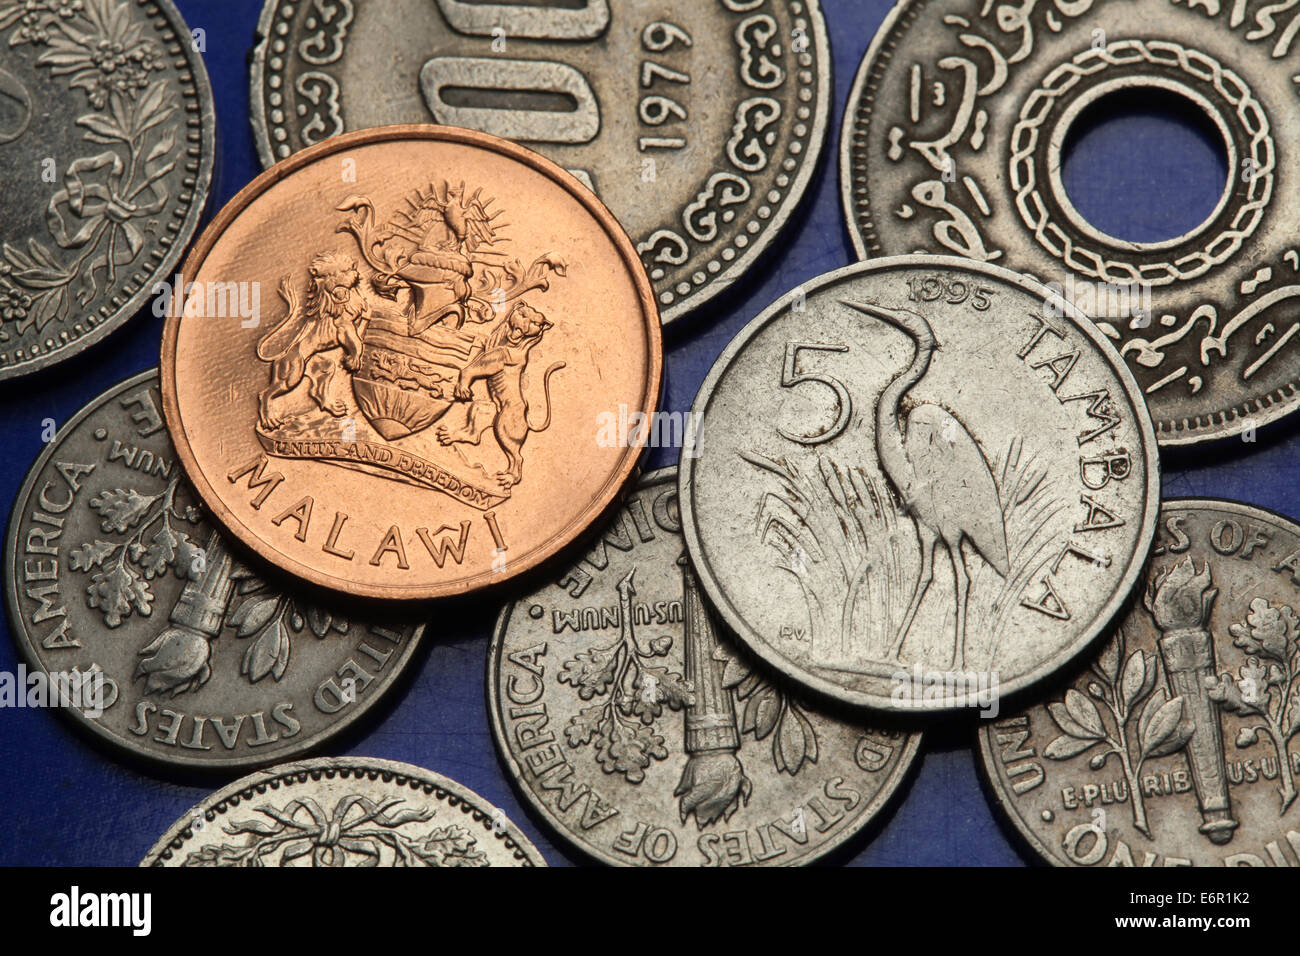 Münzen von Malawi. Purpurreiher (Ardea Purpurea) und Malawi Wappen in Malawi Tambala Münzen abgebildet. Stockfoto